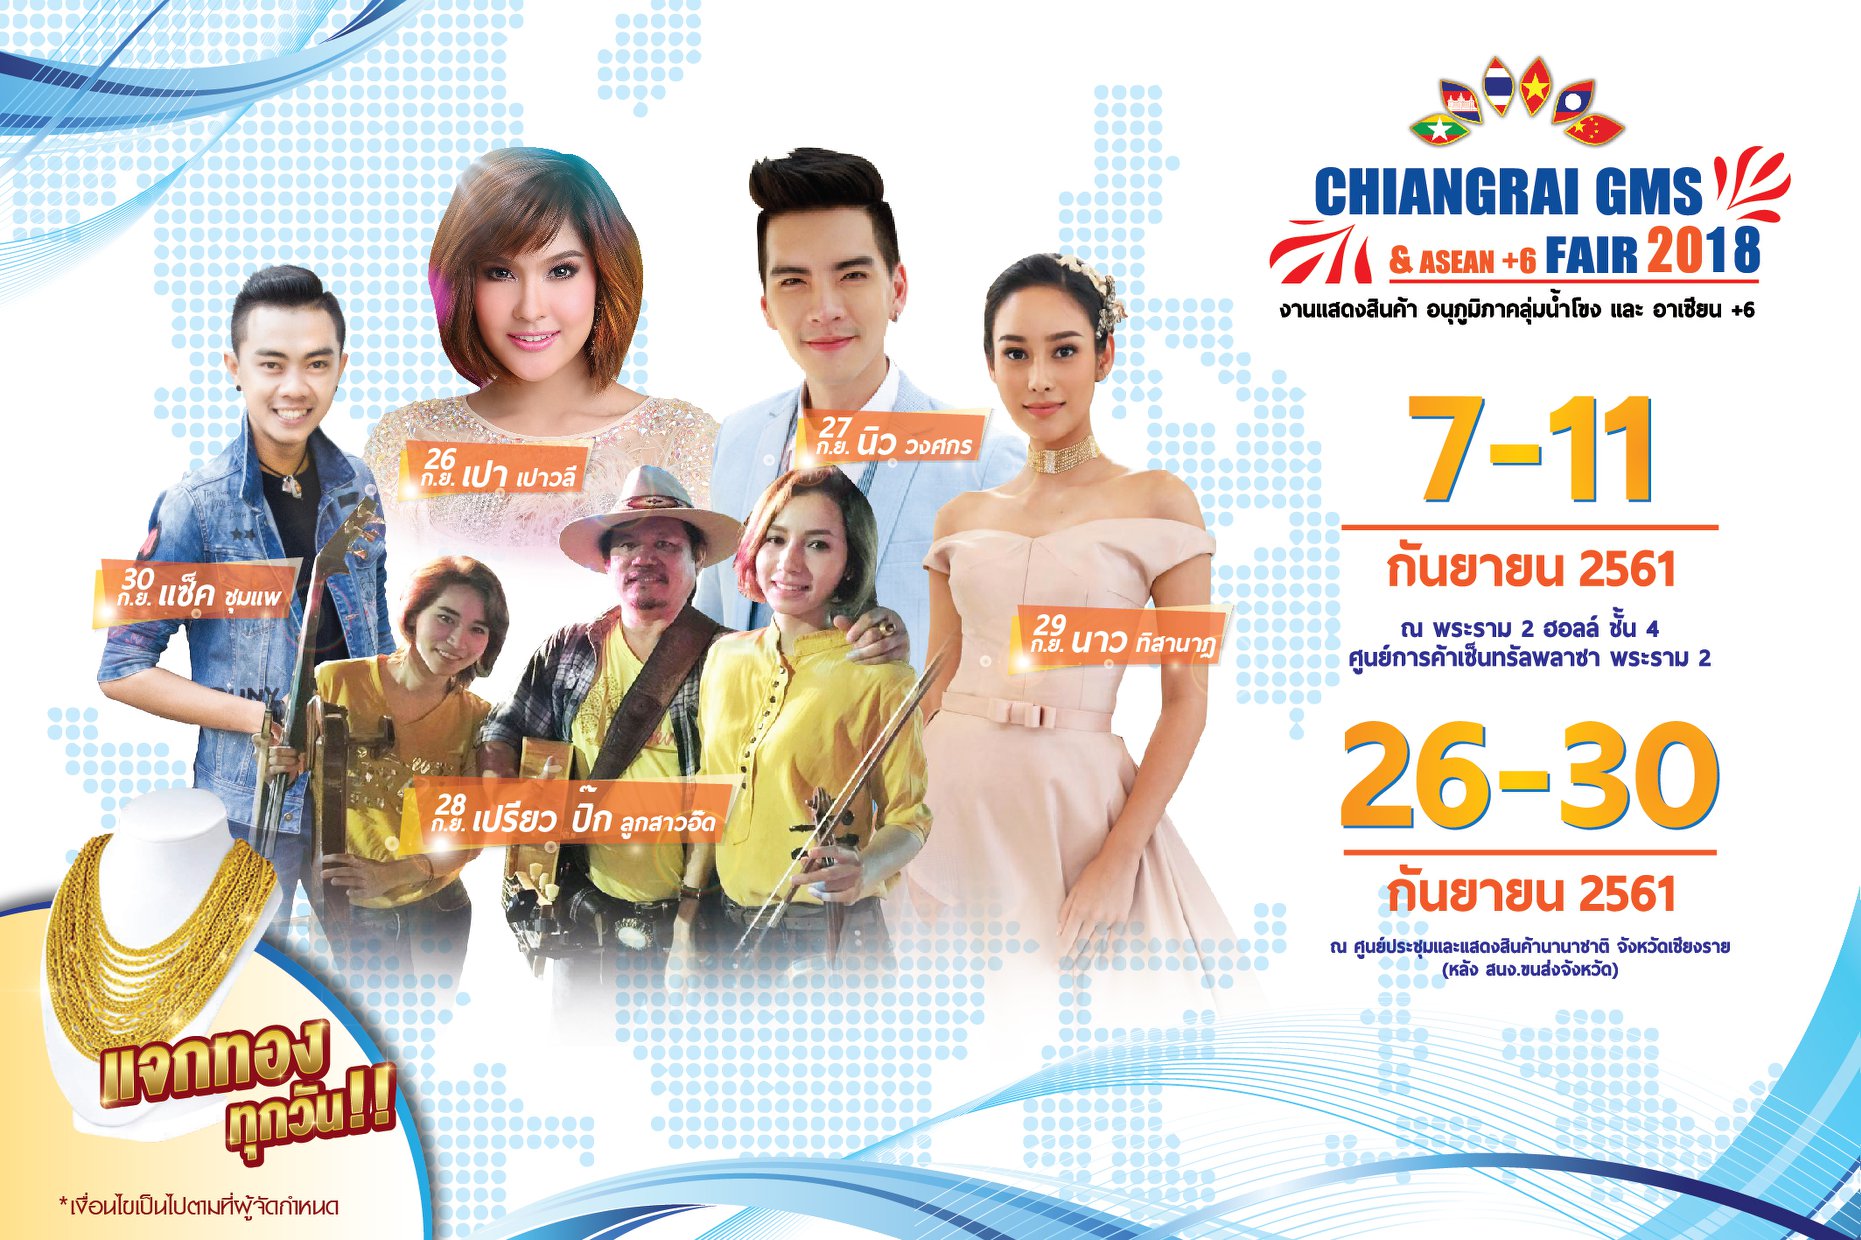 Chiangrai GMS & ASEAN + 6 FAIR 2018 @Chiang rai